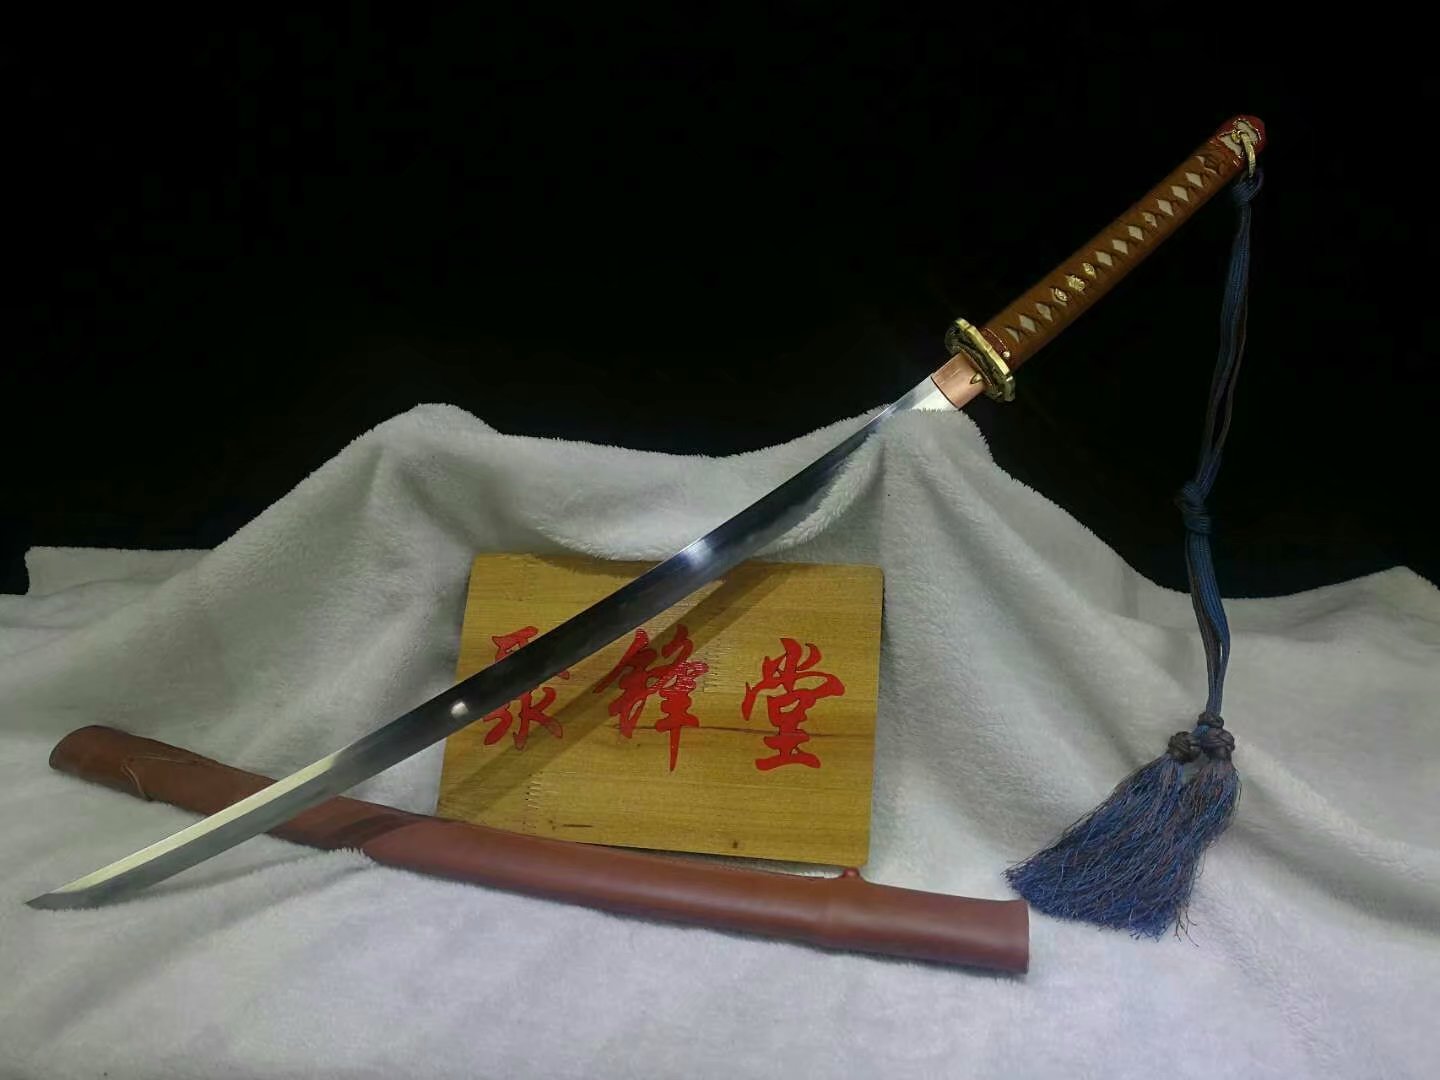 新九八式军刀 - 聚锋堂美术刀剑-名刀复刻,日本武士刀